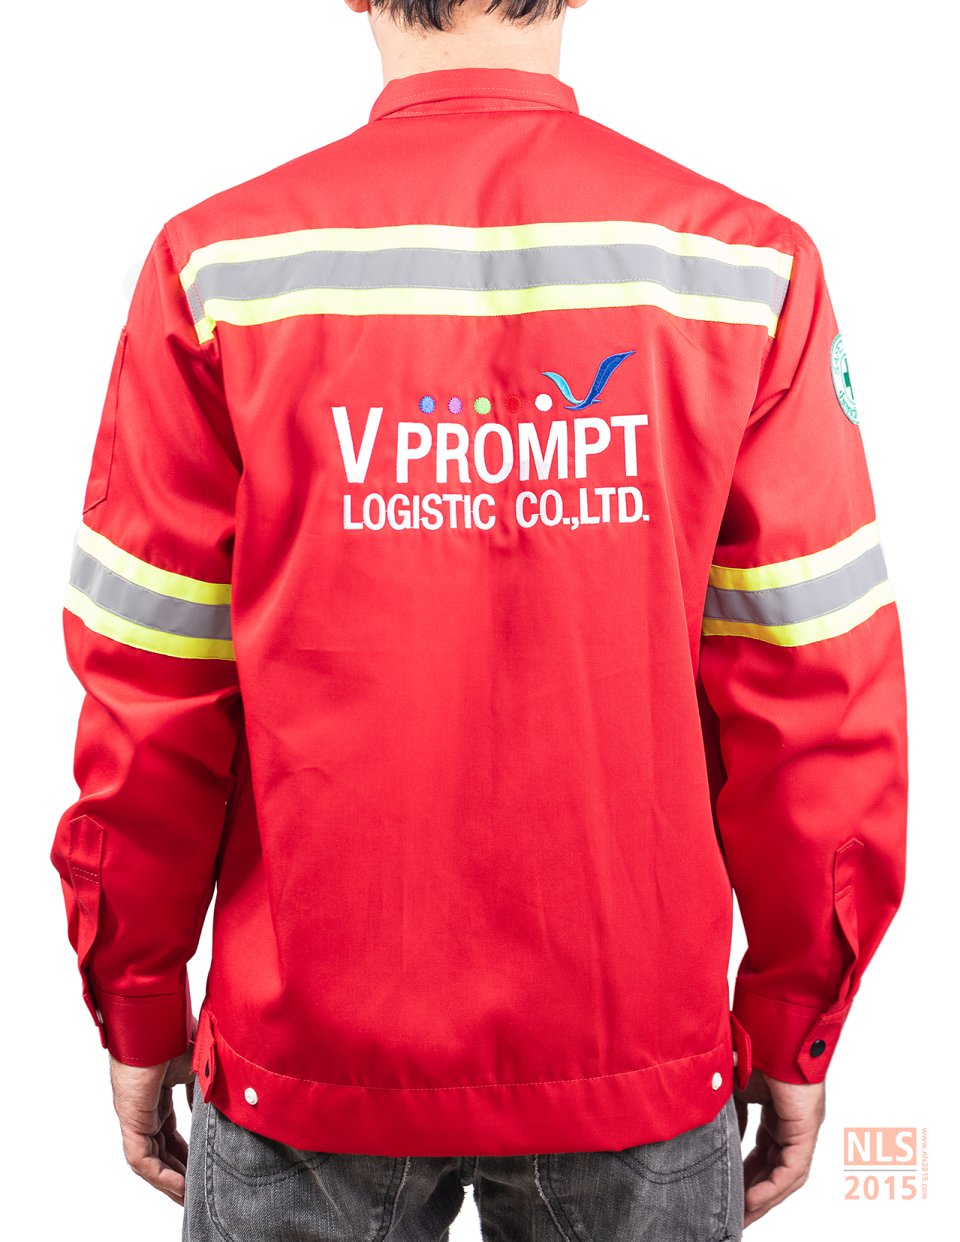 ตัวอย่างชุด uniform พนักงานขับรถบริษัท วีพร้อมโลจิสติก จำกัด / นลินสิริ 2015 โรงานผลิตชุดยูนิฟอร์ม เสื้อโปโล ครบวงจรรูปที่ 